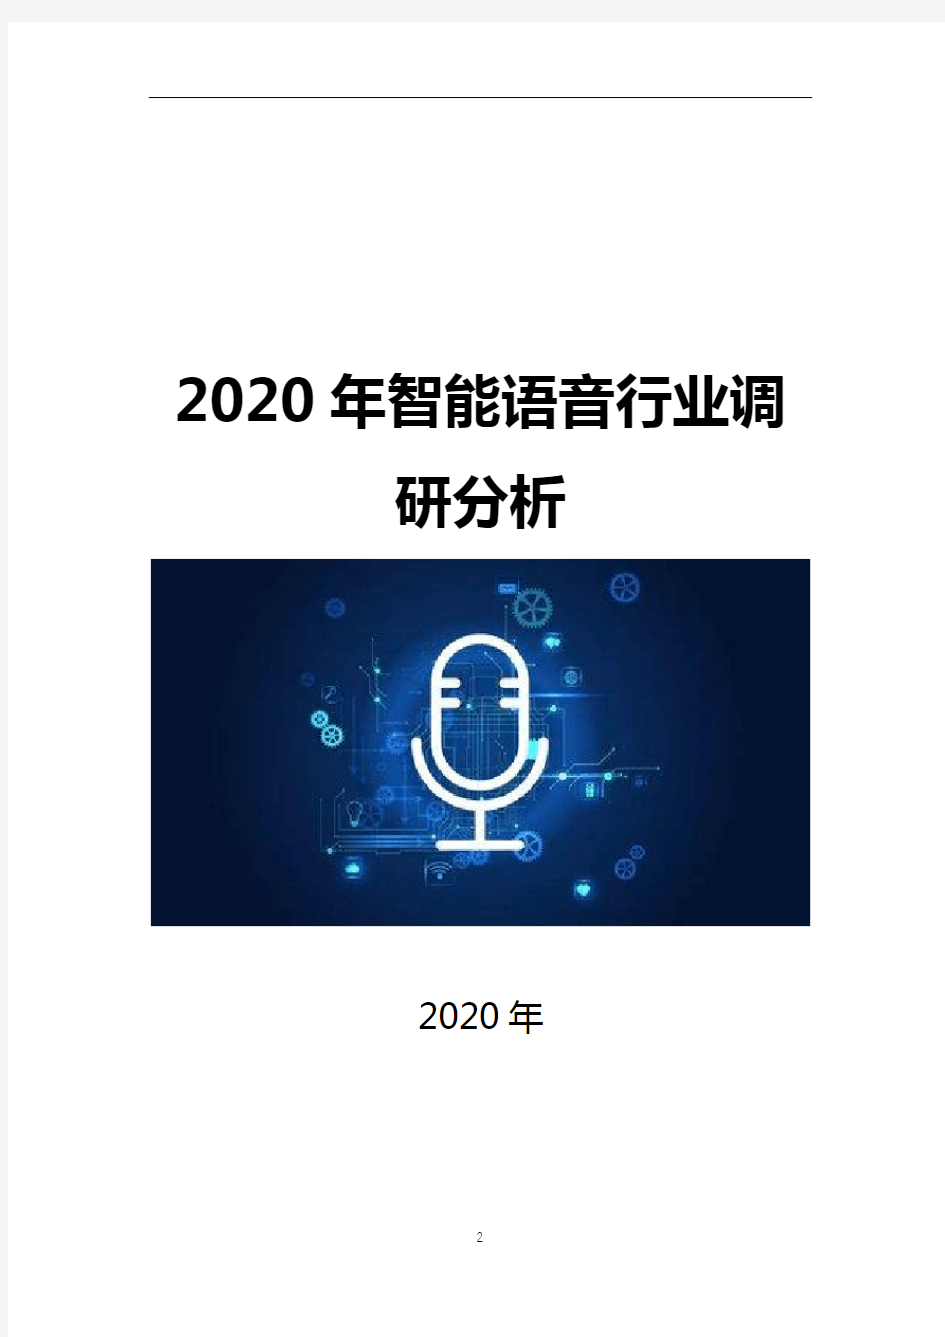 2020年智能语音行业调研分析